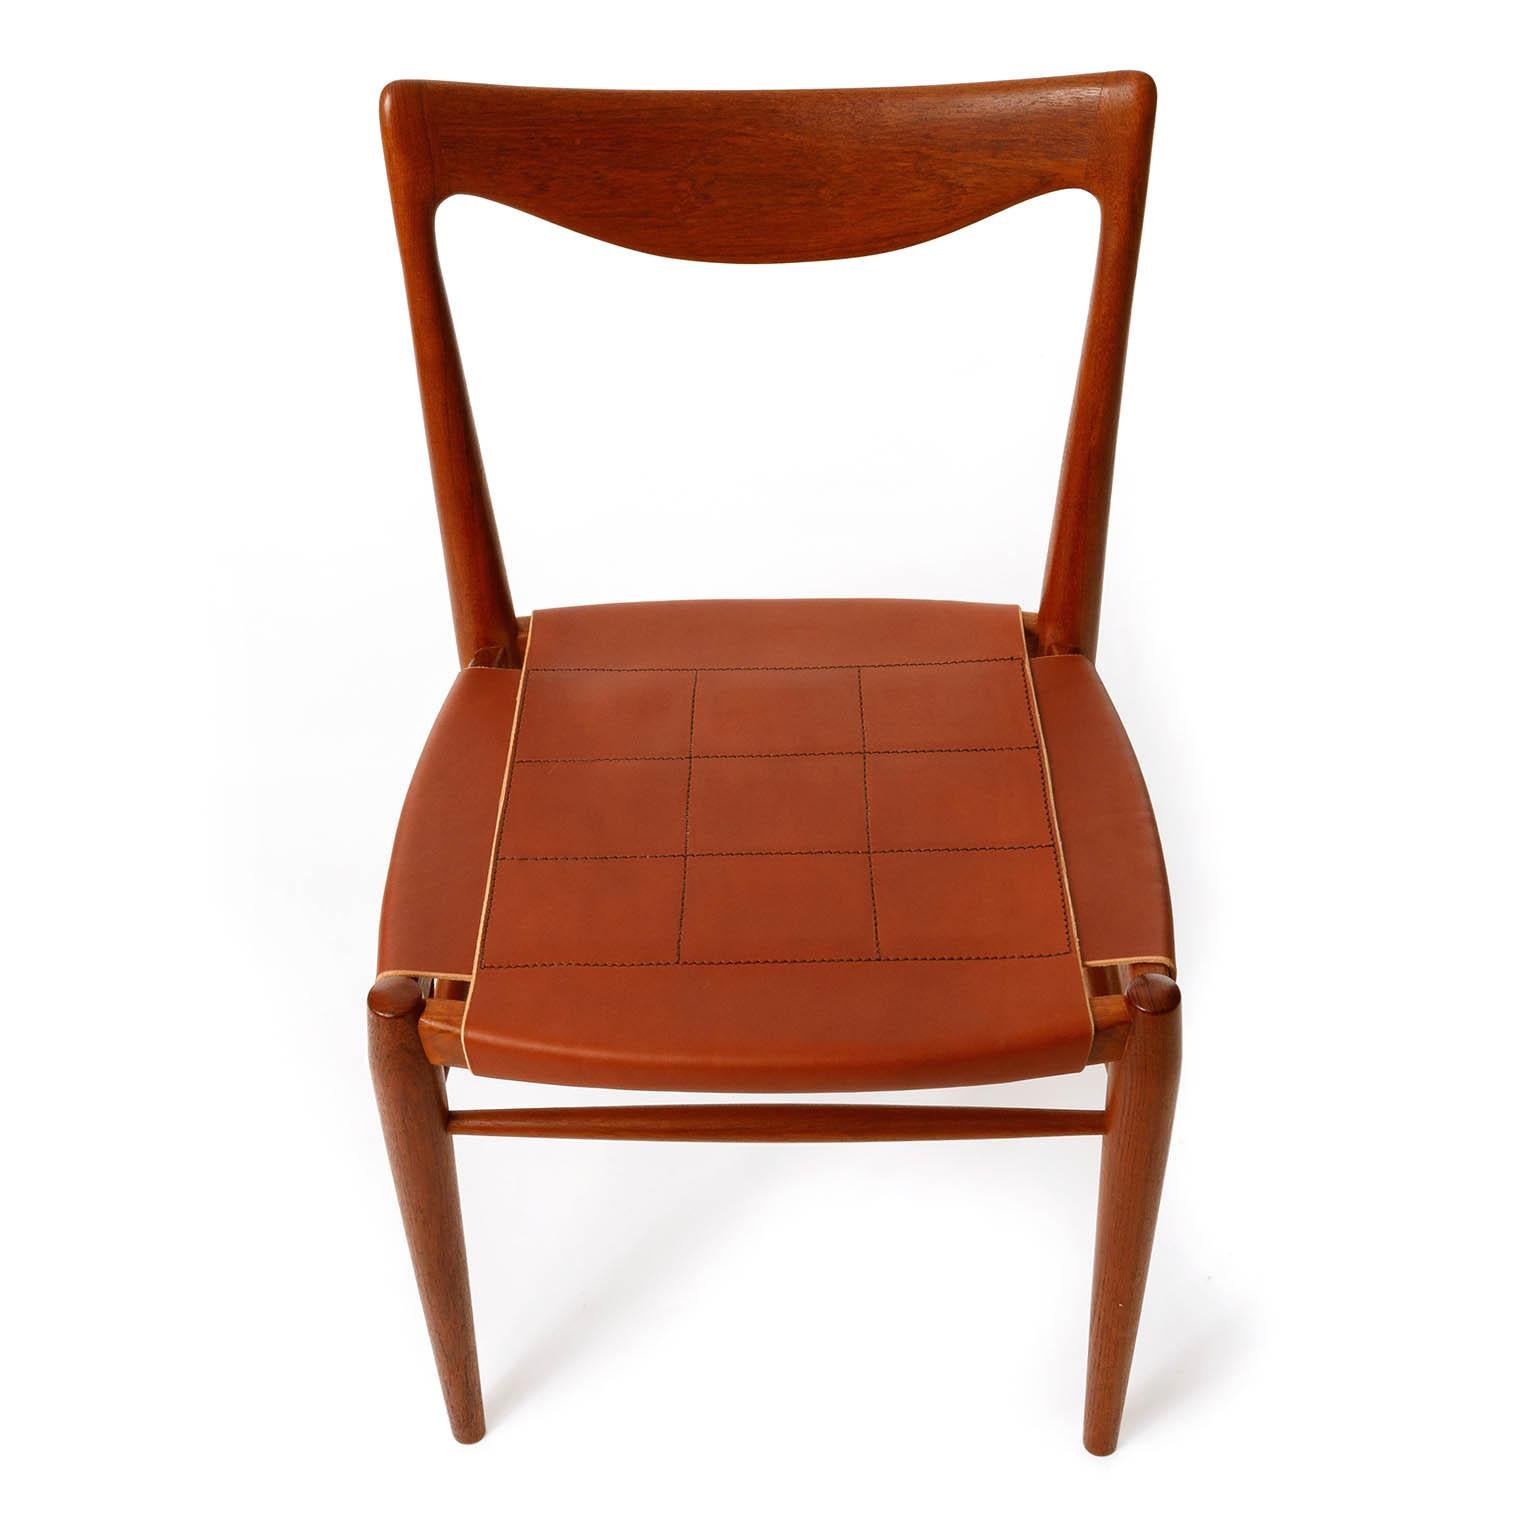 Scandinavian Modern Six 'Bambi' Chairs Rastad & Relling for Gustav Bahus, Cognac Leather Teak, 1950s For Sale